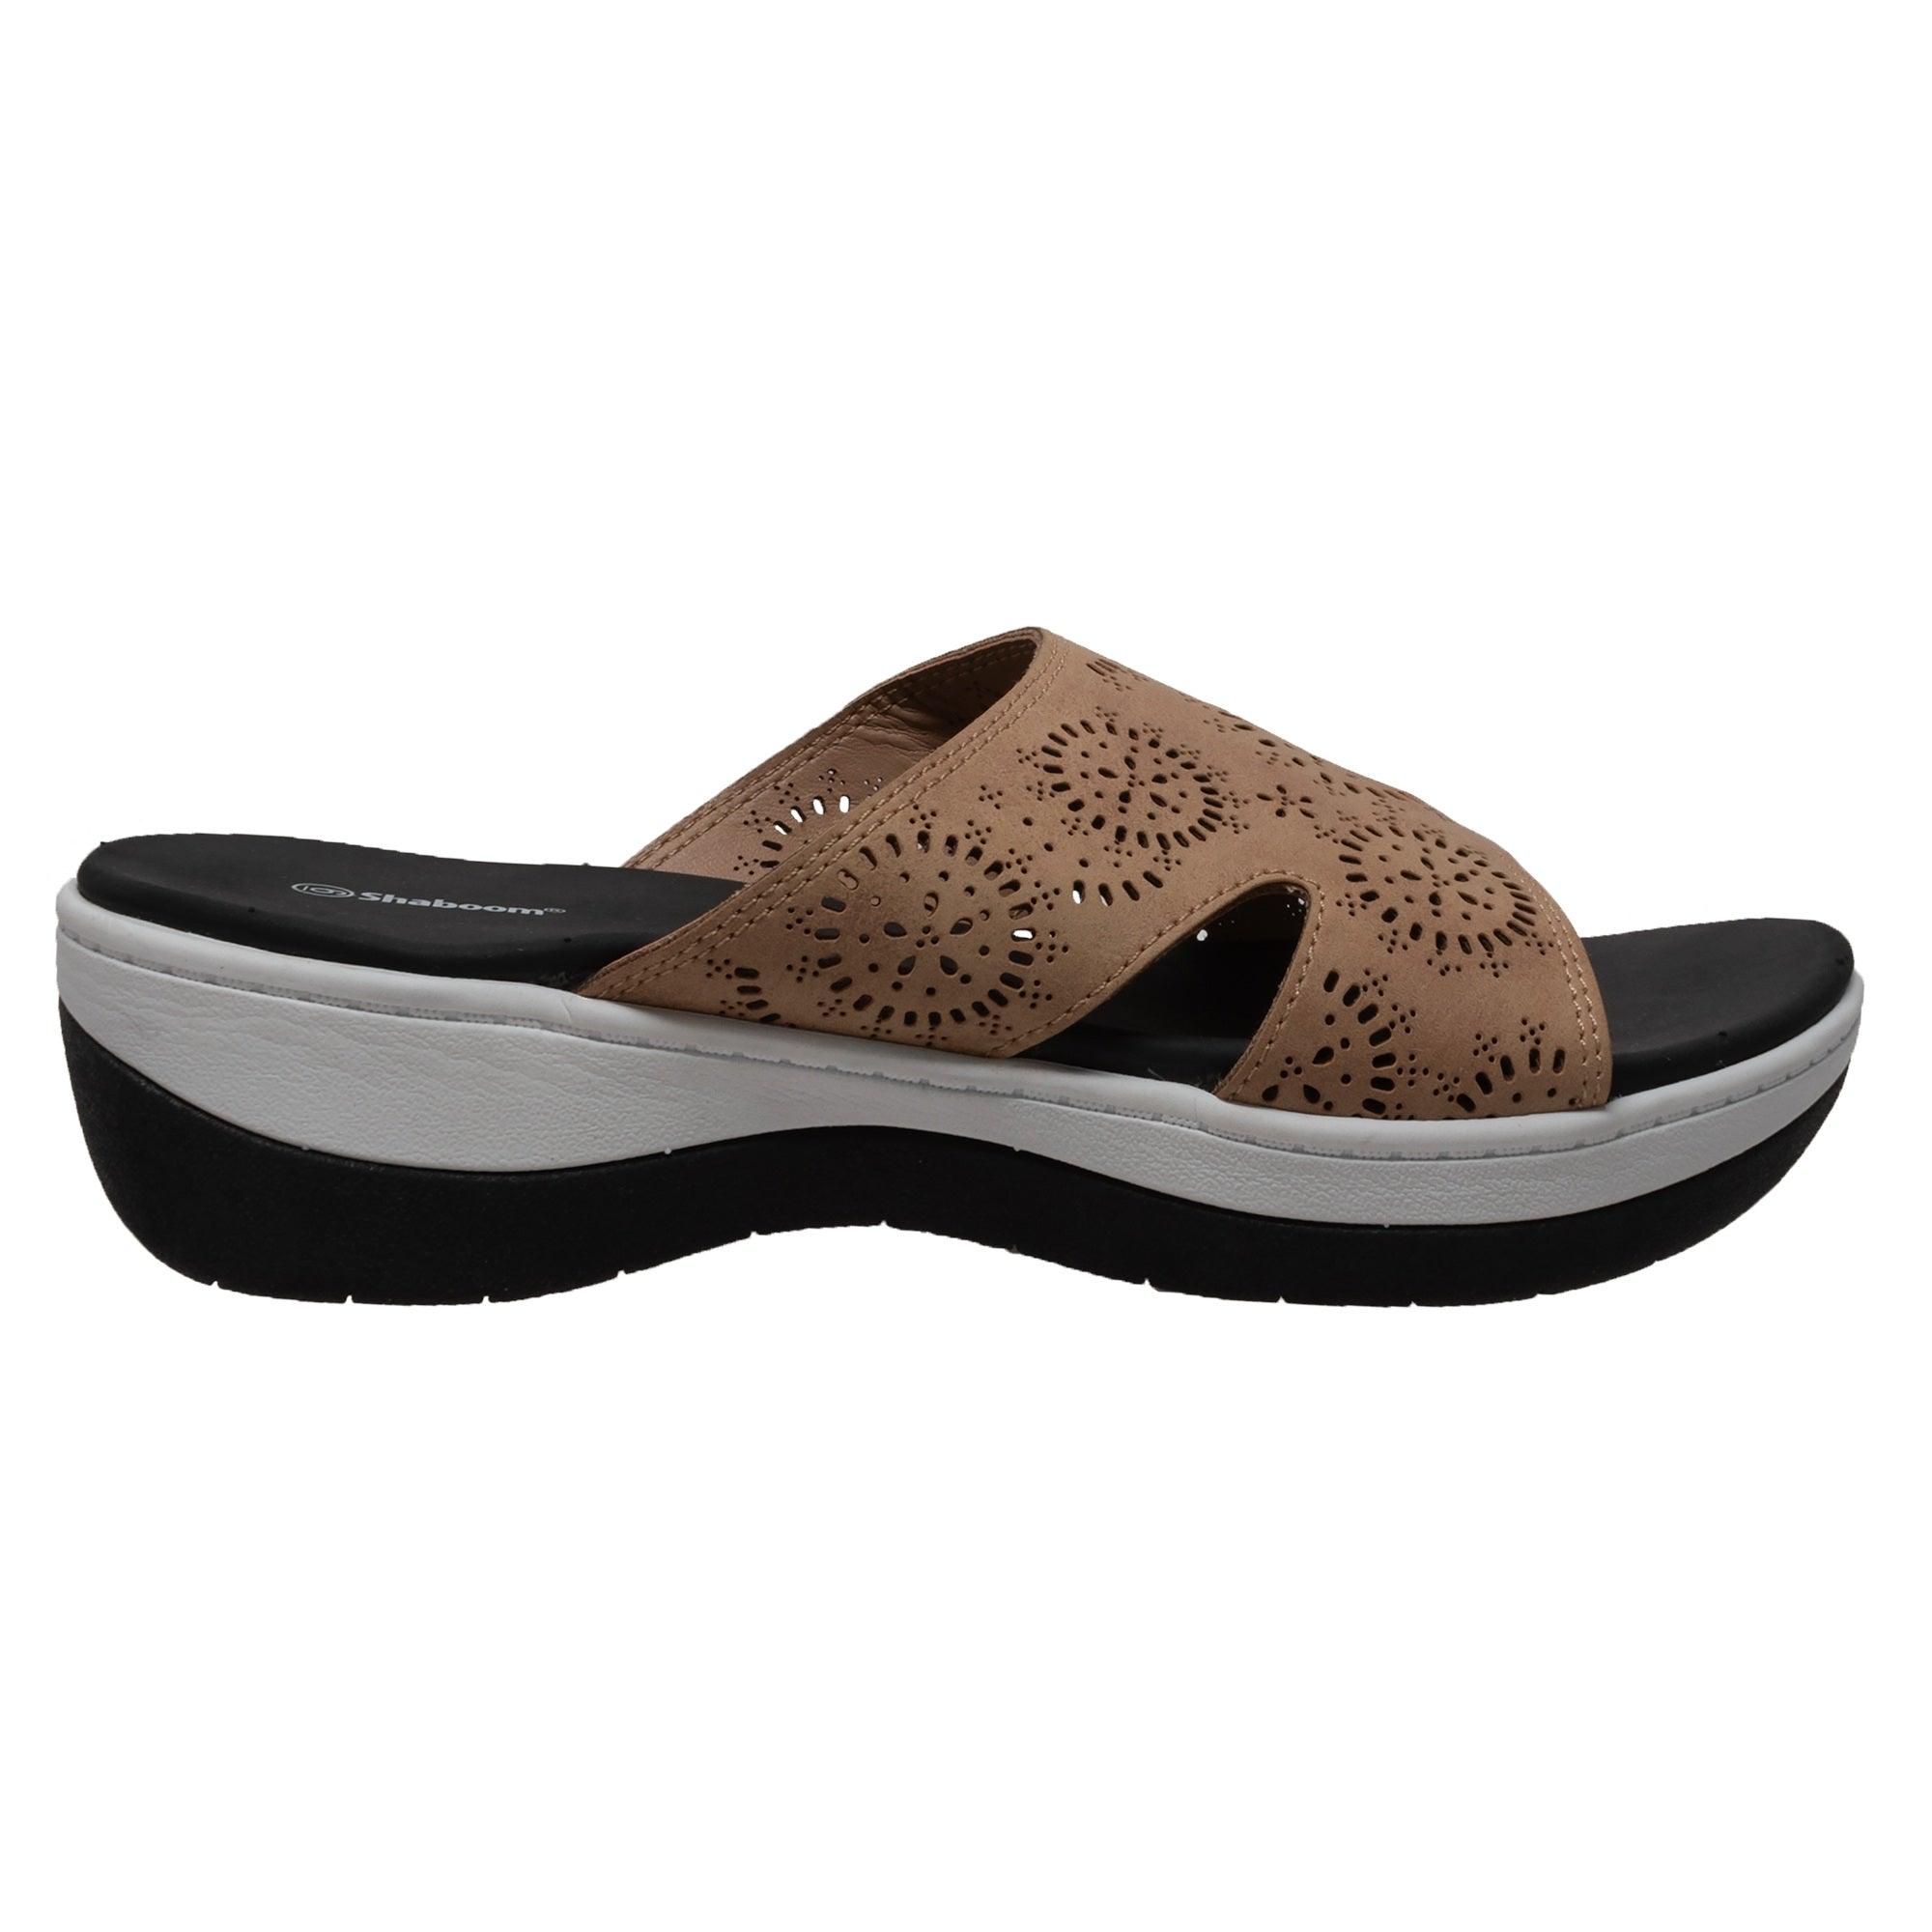 Shaboom Women's Comfort Curved Slide Sandals Taupe - Flyclothing LLC